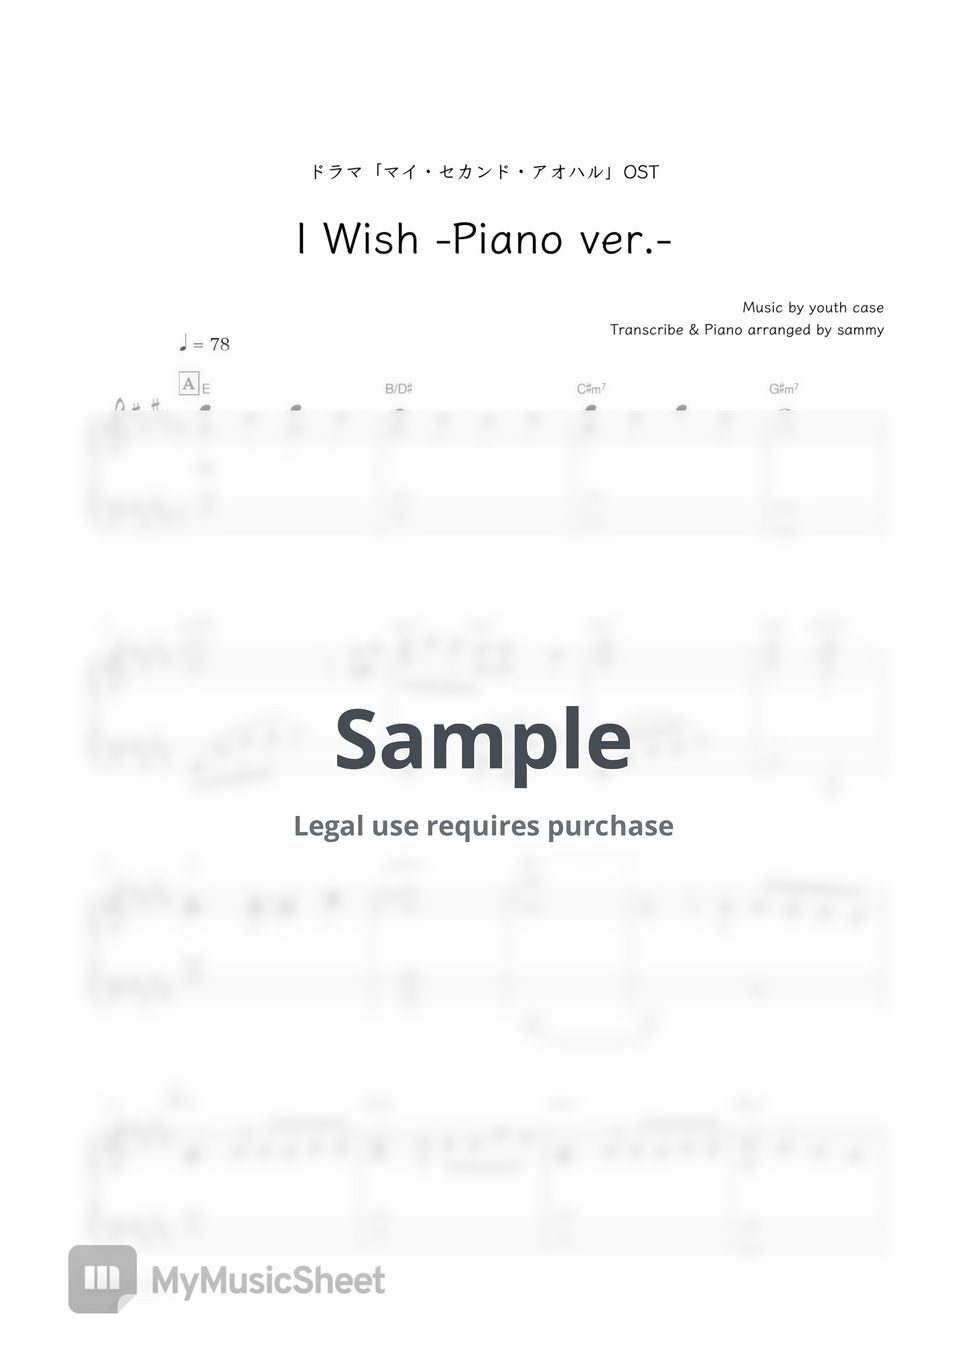 浪花男子・日剧《我的第二青春 マイ・セカンド・アオハル》OST - I Wish (-Piano ver.-) by sammy